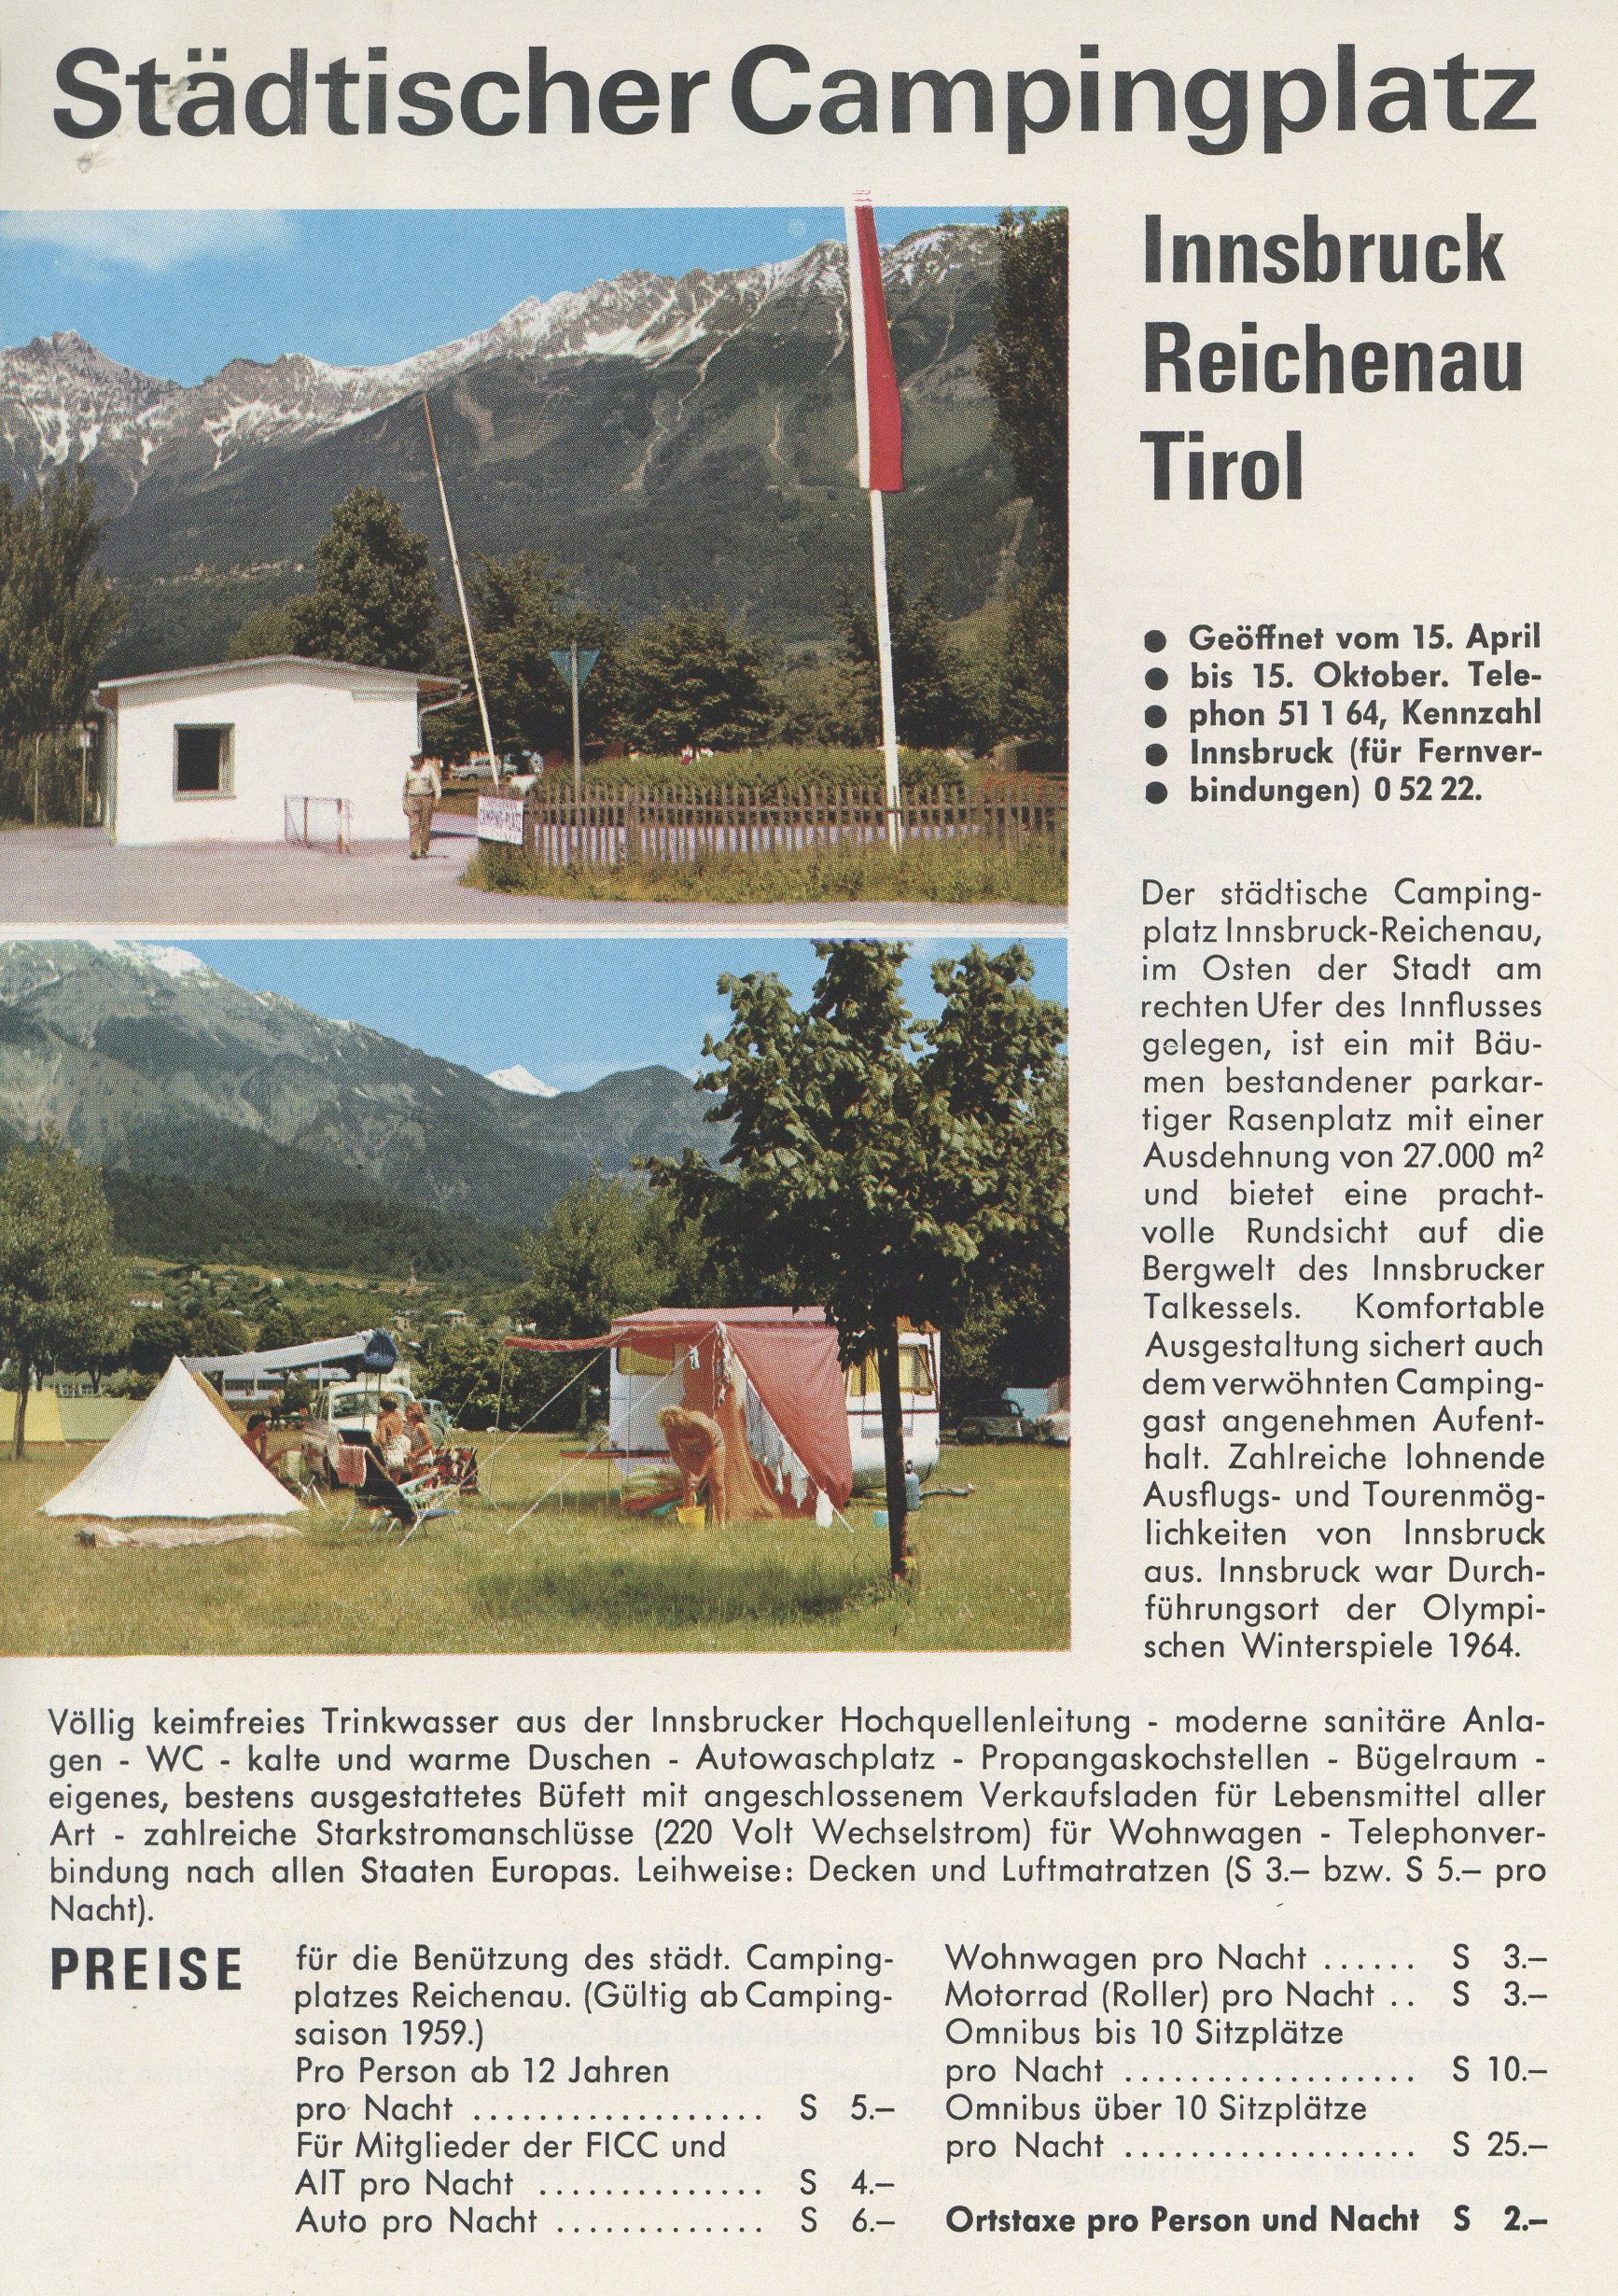 Camping In Innsbruck